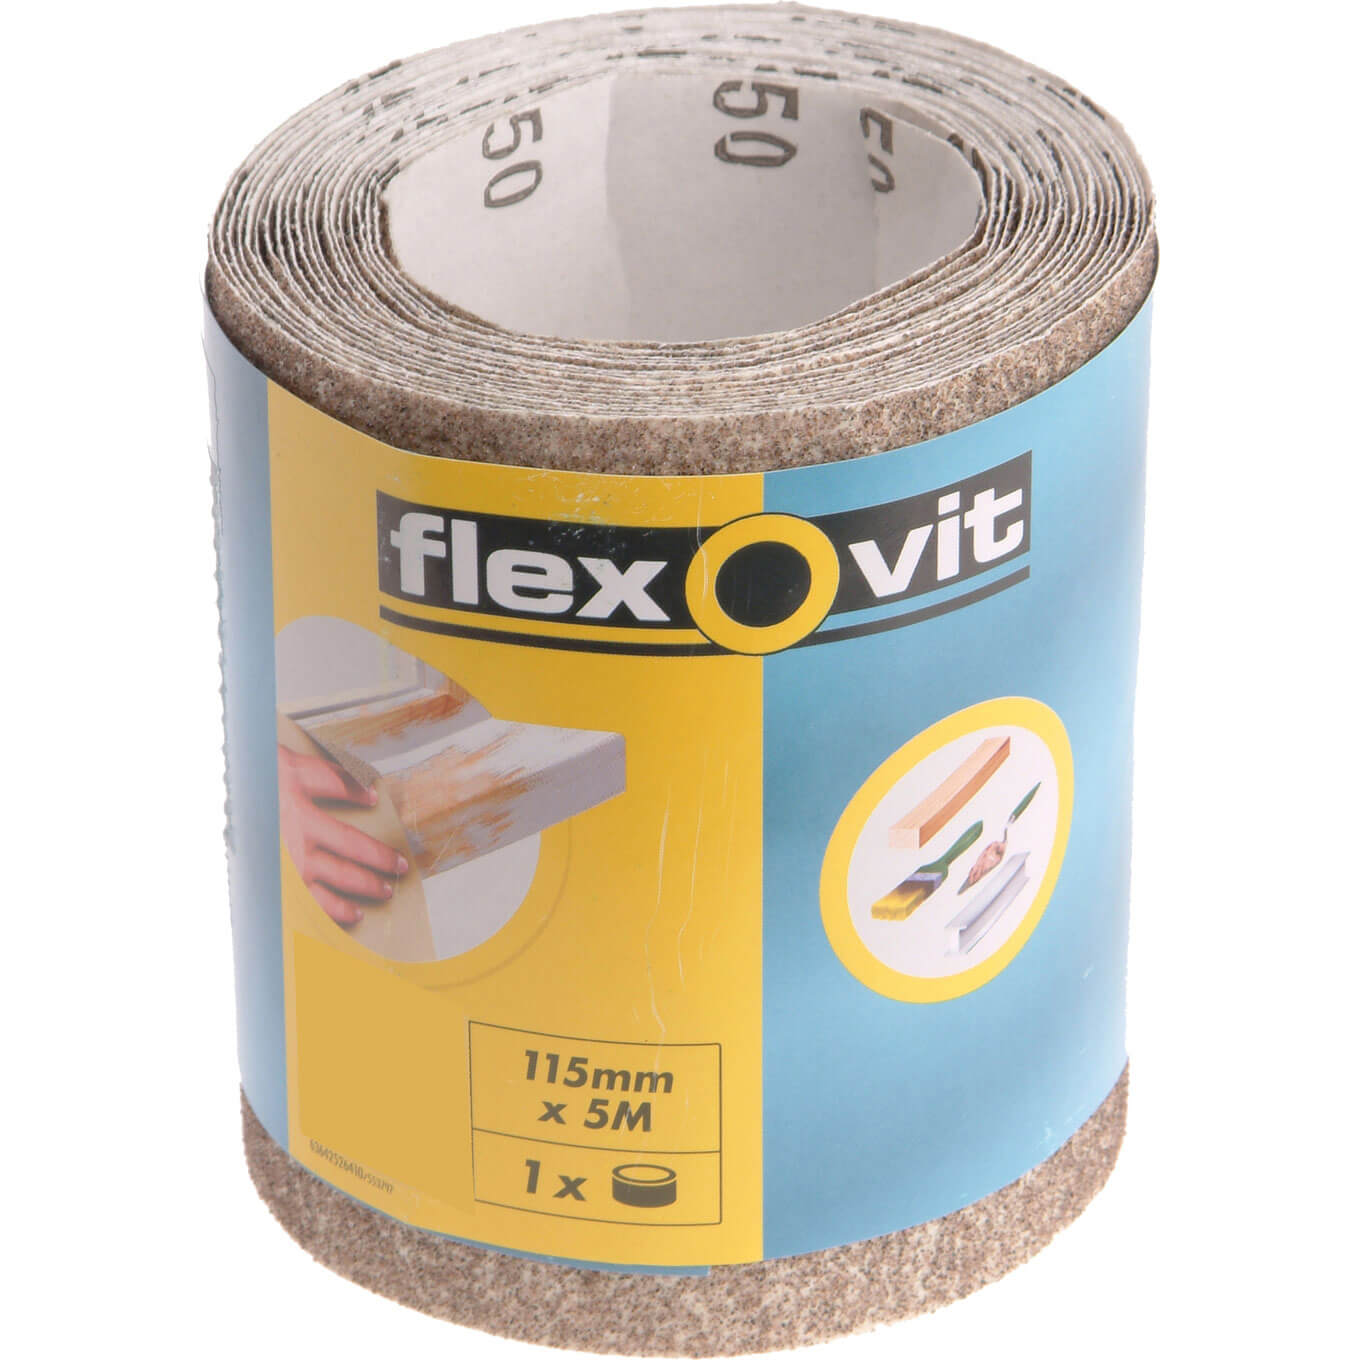 Image of Flexovit General Purpose Sanding Roll 115mm 5m 120g